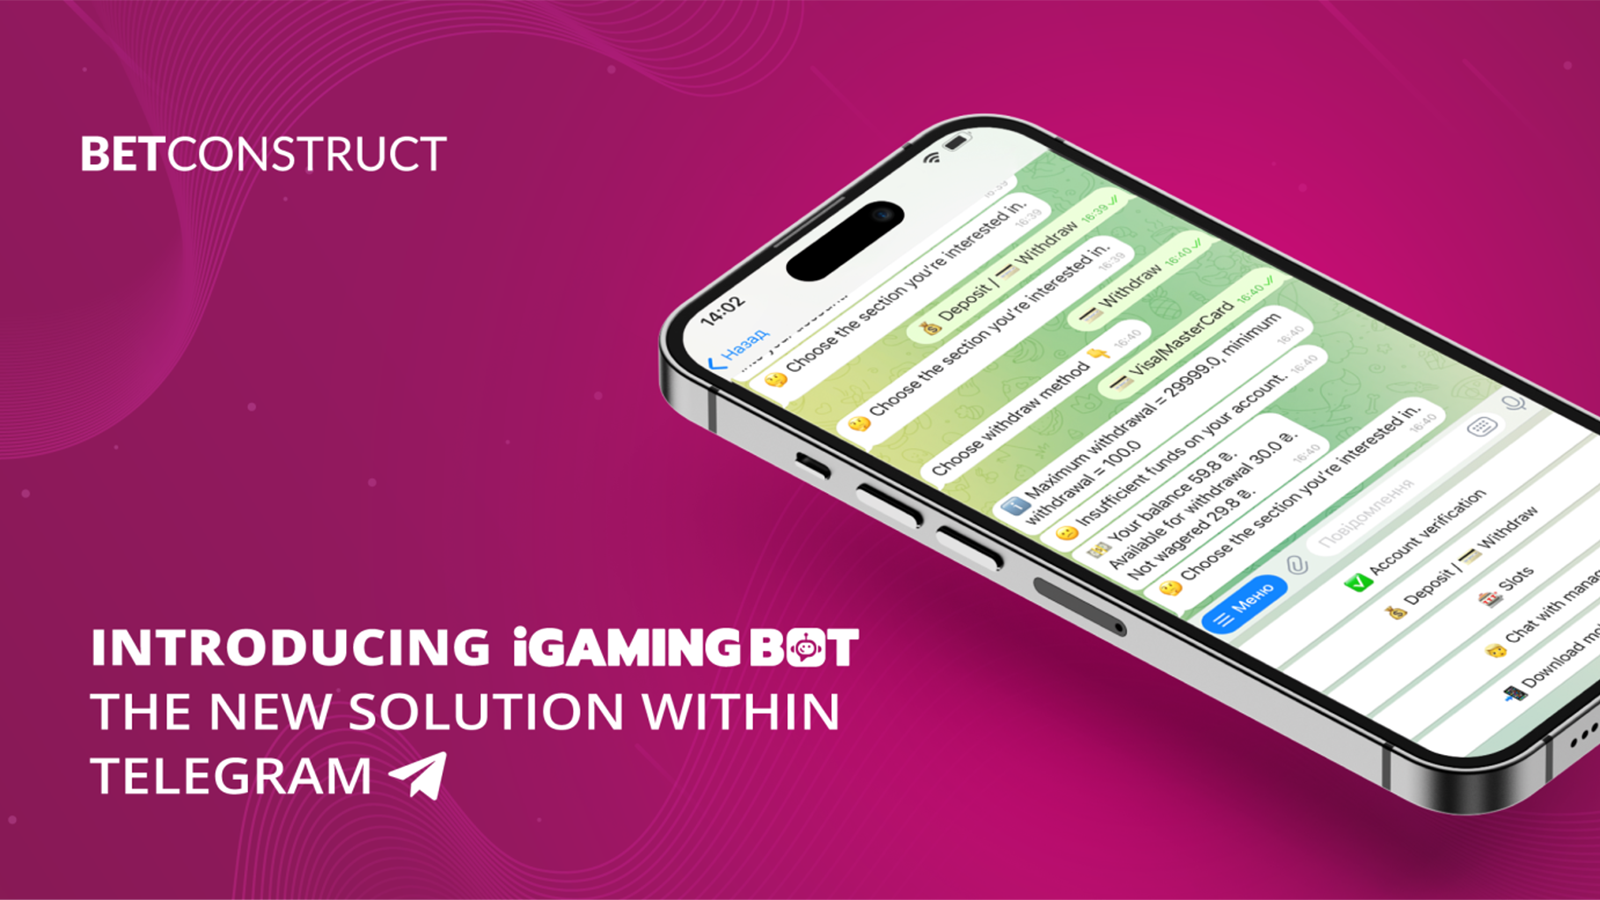 BetConstruct's iGaming Bot Gaming on Telegram